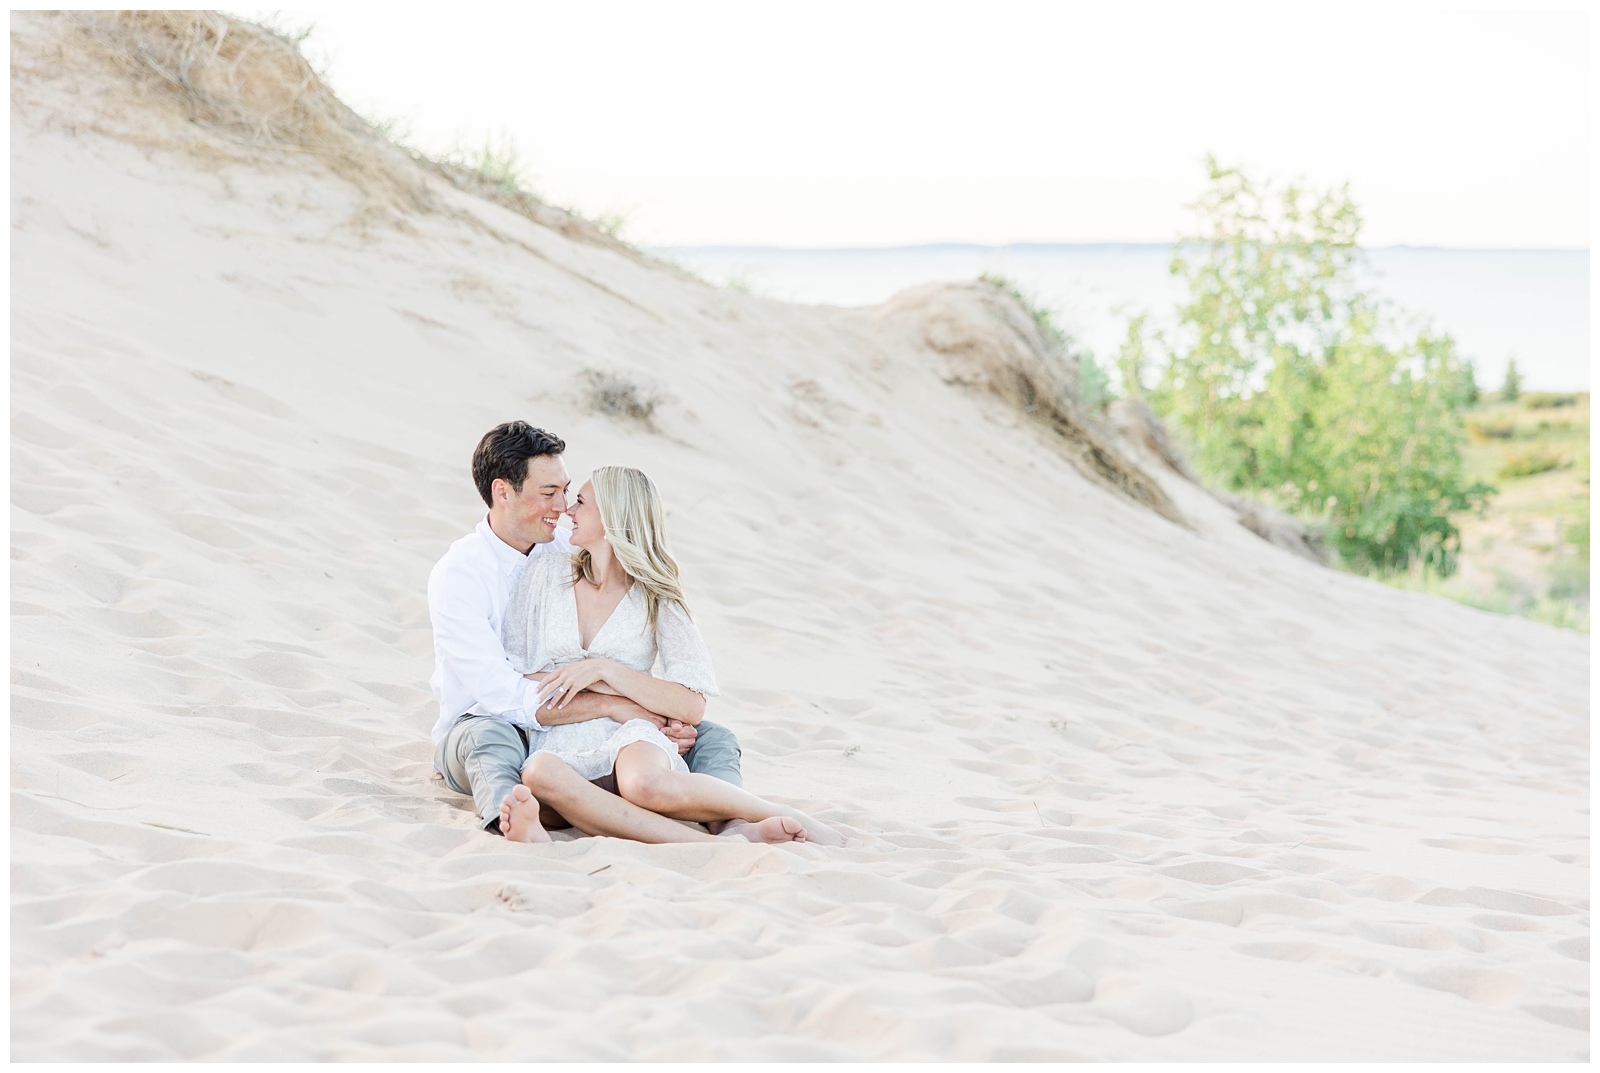 Engagement photos at Sleeping Bear Dunes